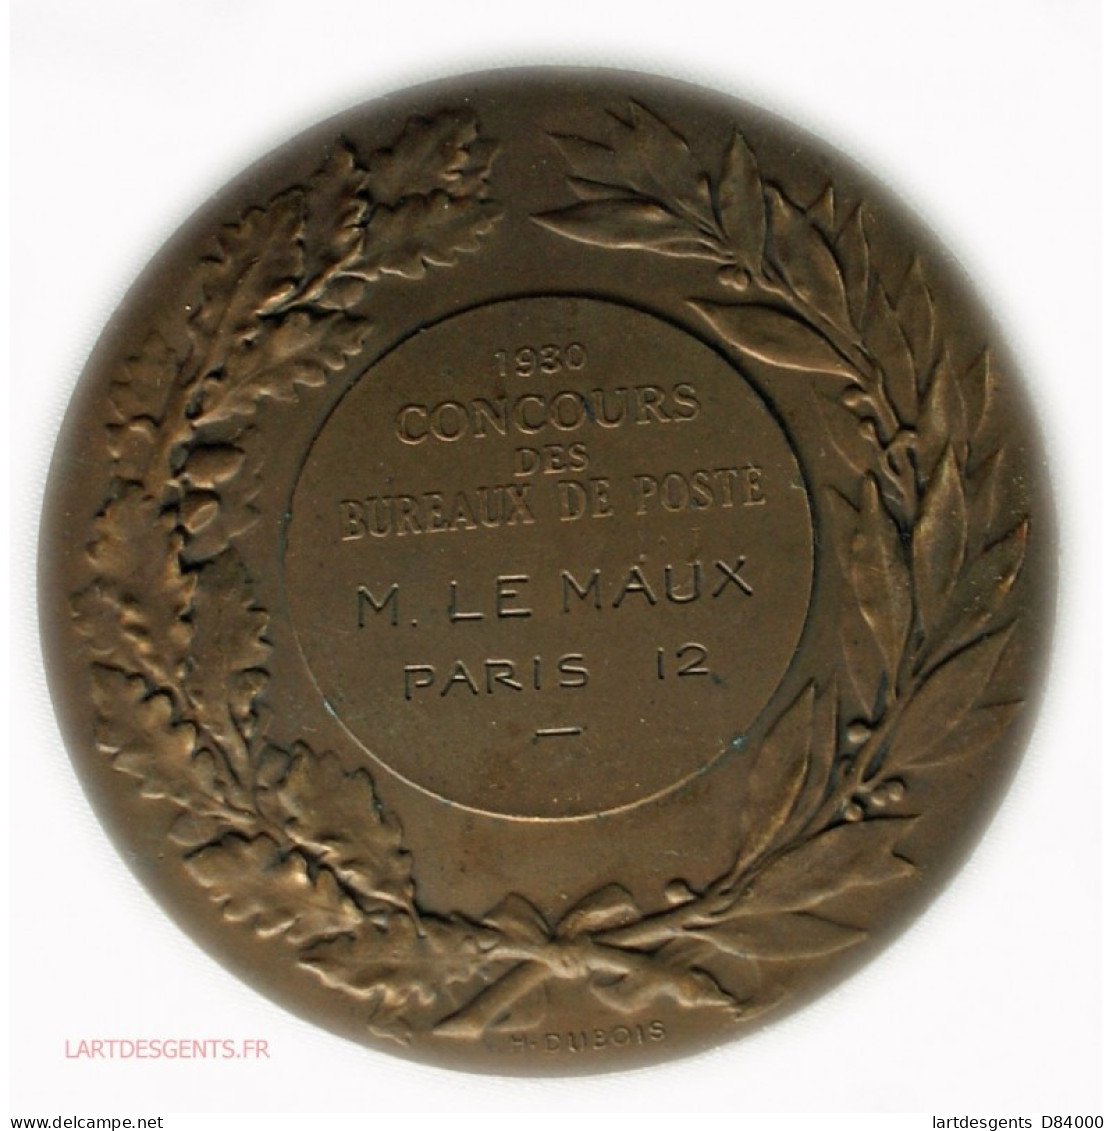 Rare Médaille Concours Des Bureaux De Poste Paris 12 Par Daniel DUPUIS - Royal / Of Nobility